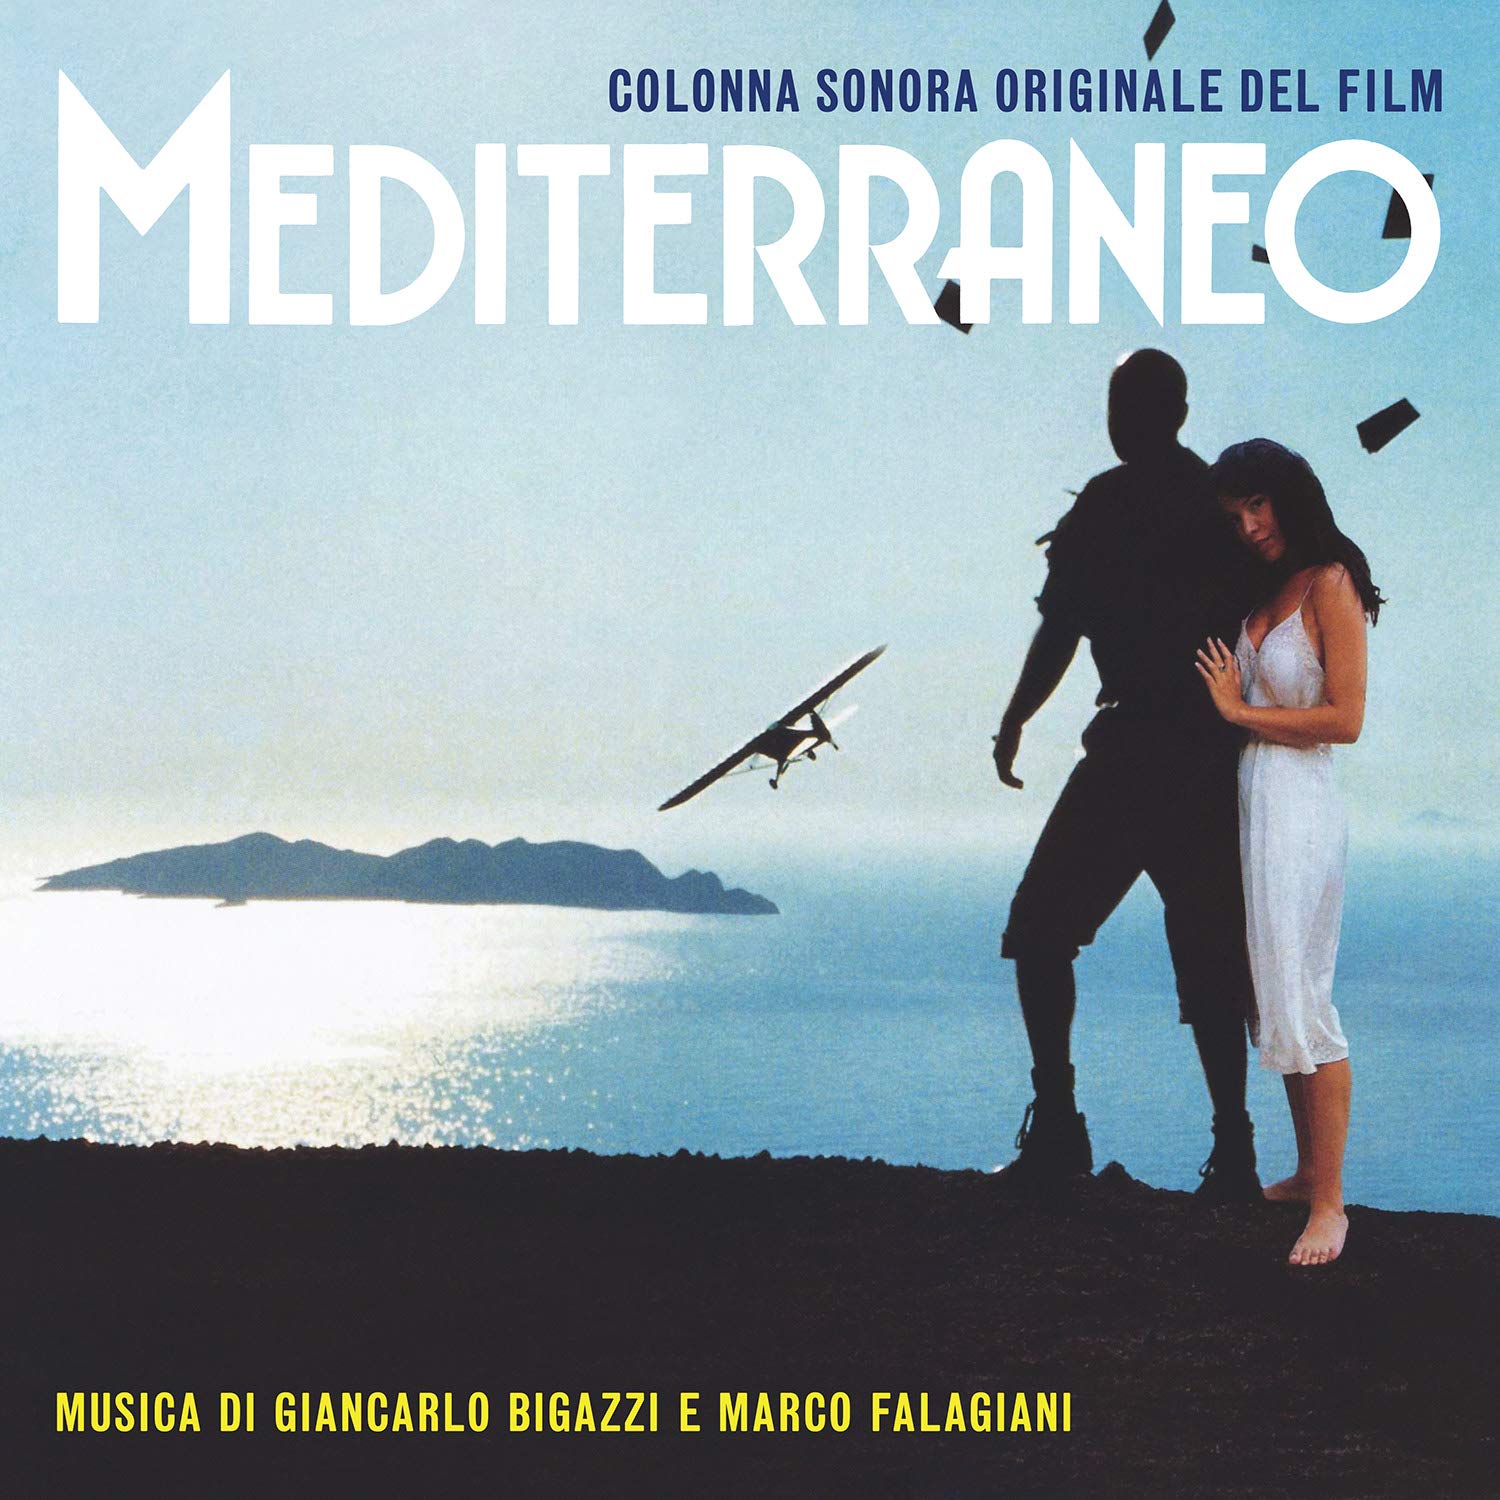 Vinile Giancarlo Bigazzi Marco Falagiani - Mediterraneo O.S.T. Ltd.Ed. Clear Vinyl NUOVO SIGILLATO EDIZIONE DEL SUBITO DISPONIBILE blu